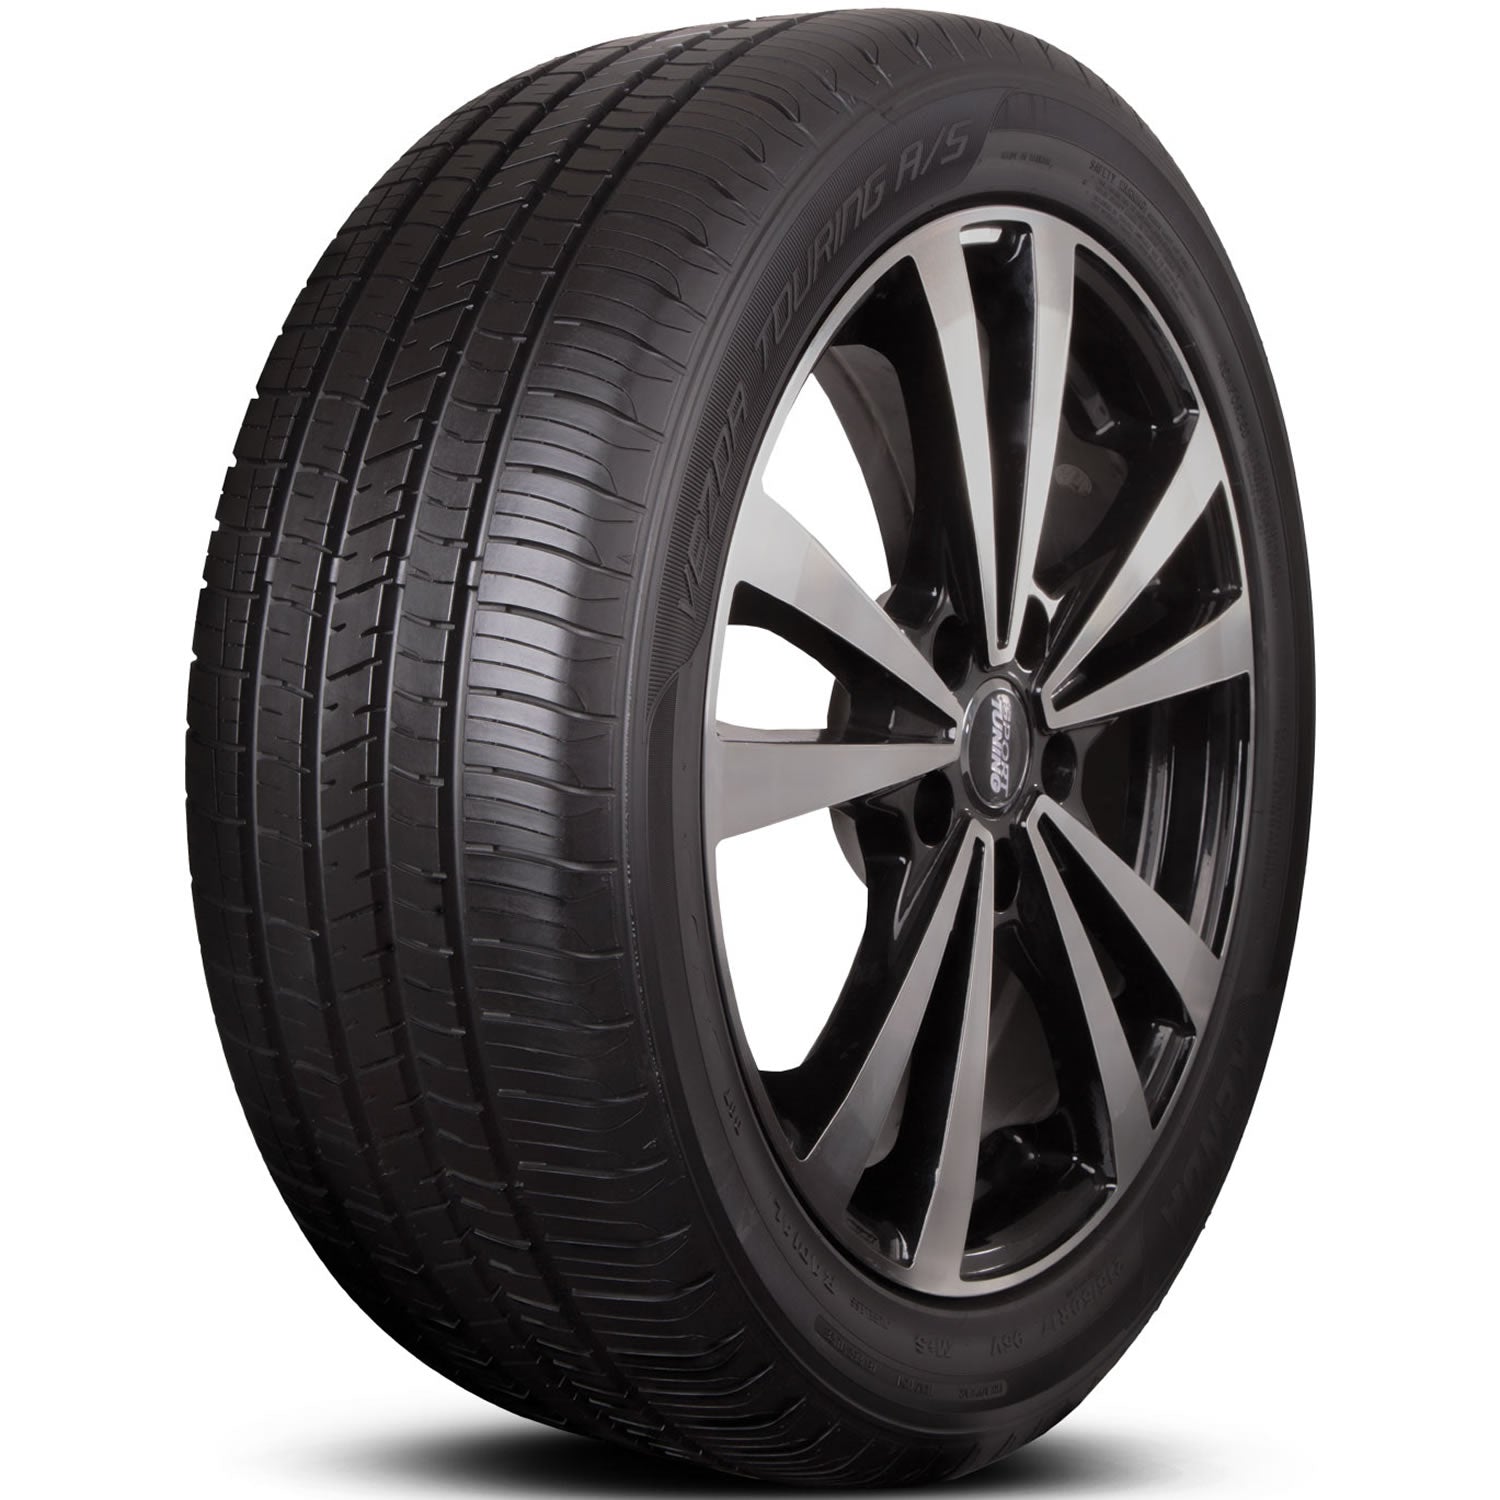 KENDA VEZDA TOURING A/S 235/45R19 XL (27.4X9.3R 19) Tires